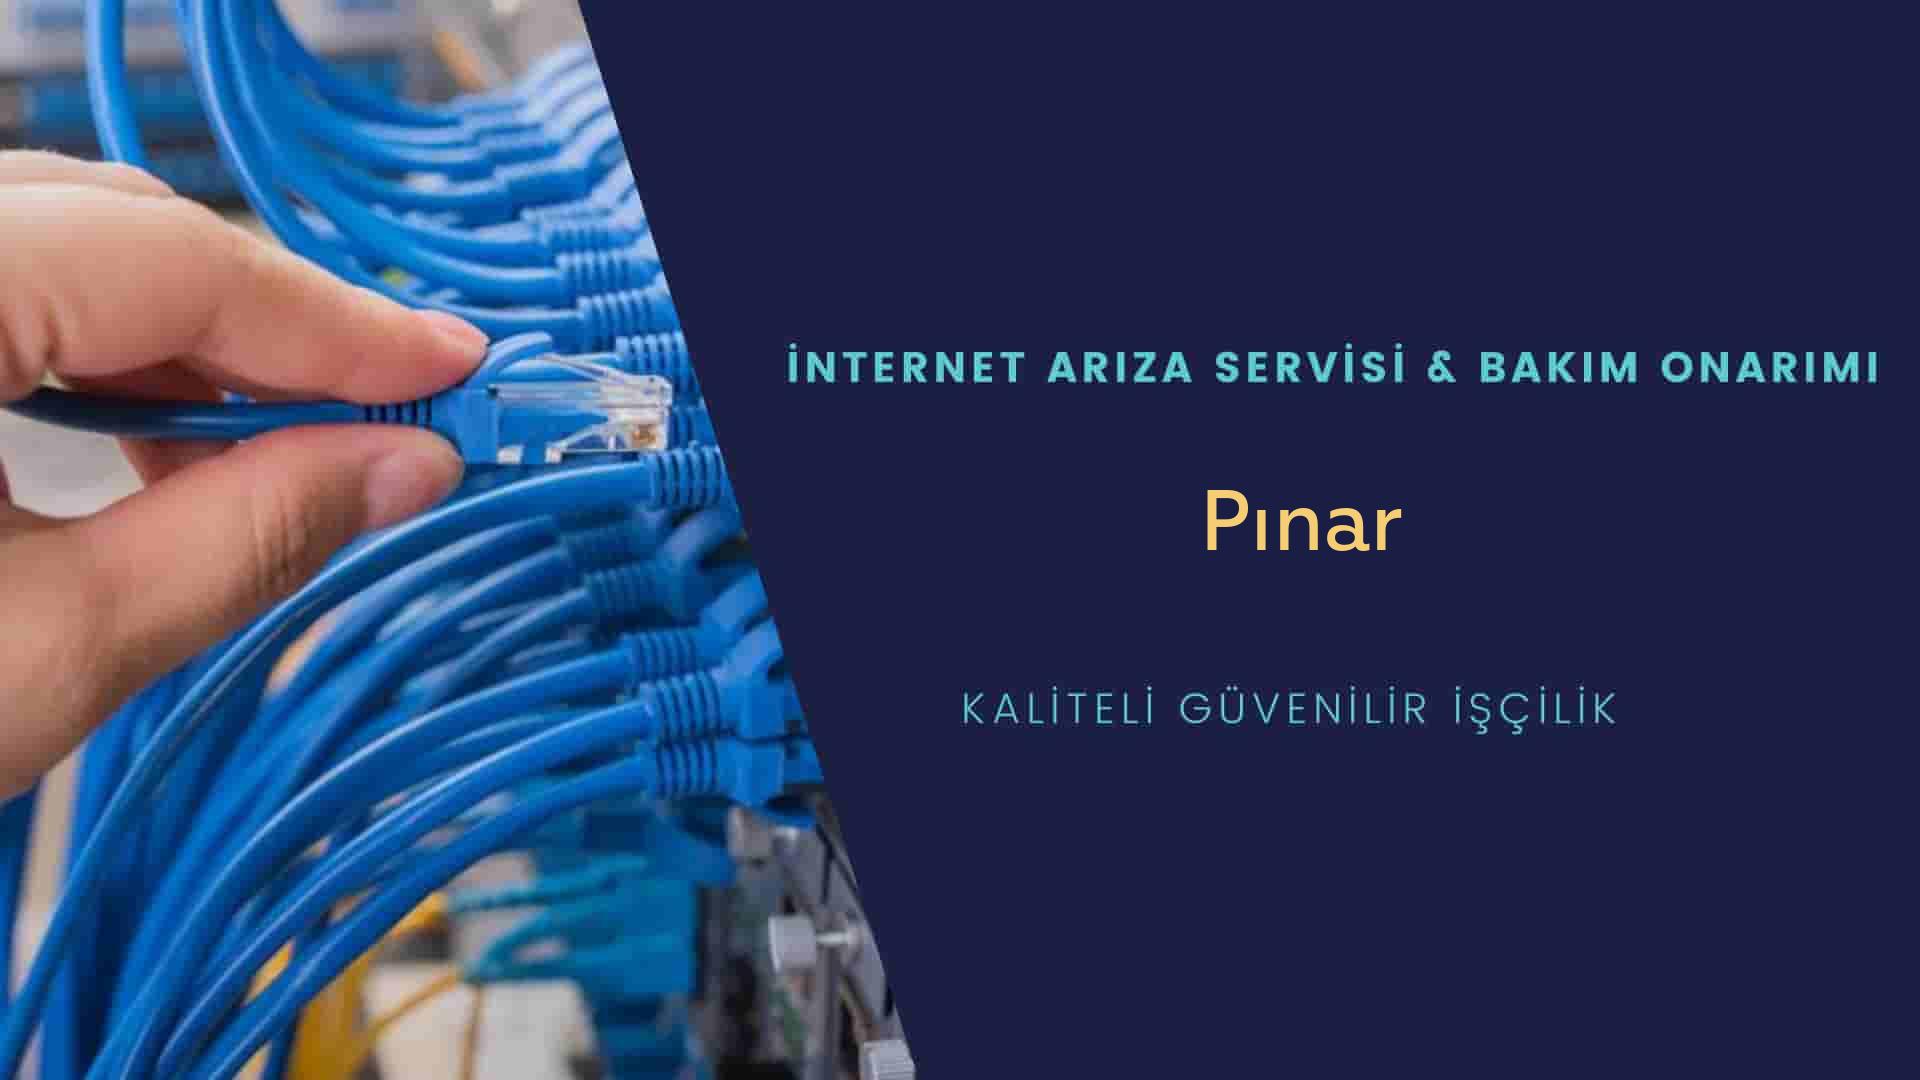 Pınar  internet kablosu çekimi yapan yerler veya elektrikçiler mi? arıyorsunuz doğru yerdesiniz o zaman sizlere 7/24 yardımcı olacak profesyonel ustalarımız bir telefon kadar yakındır size.